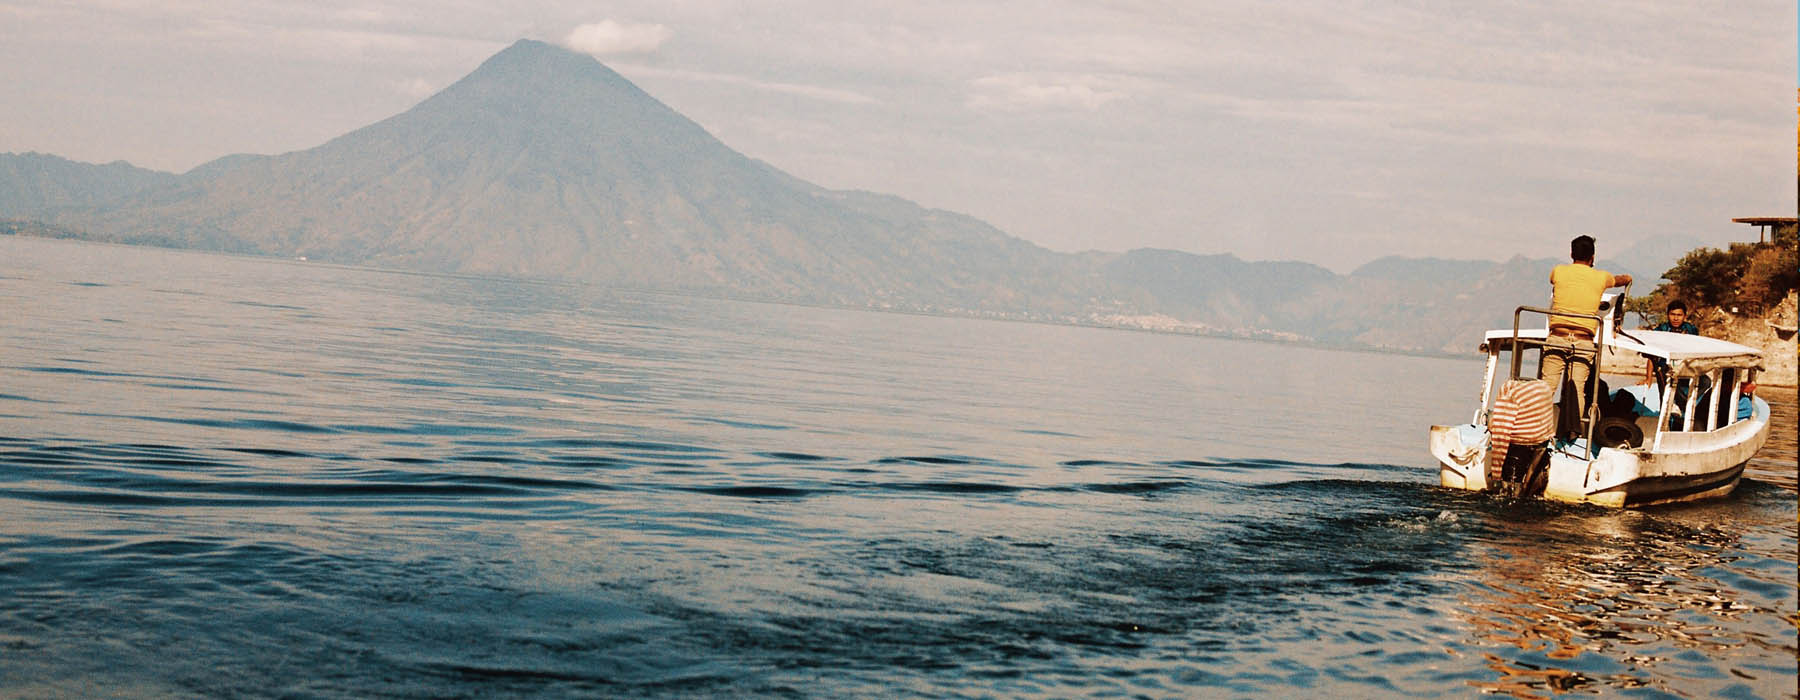 Lake Atitlan<br class="hidden-md hidden-lg" /> Holidays